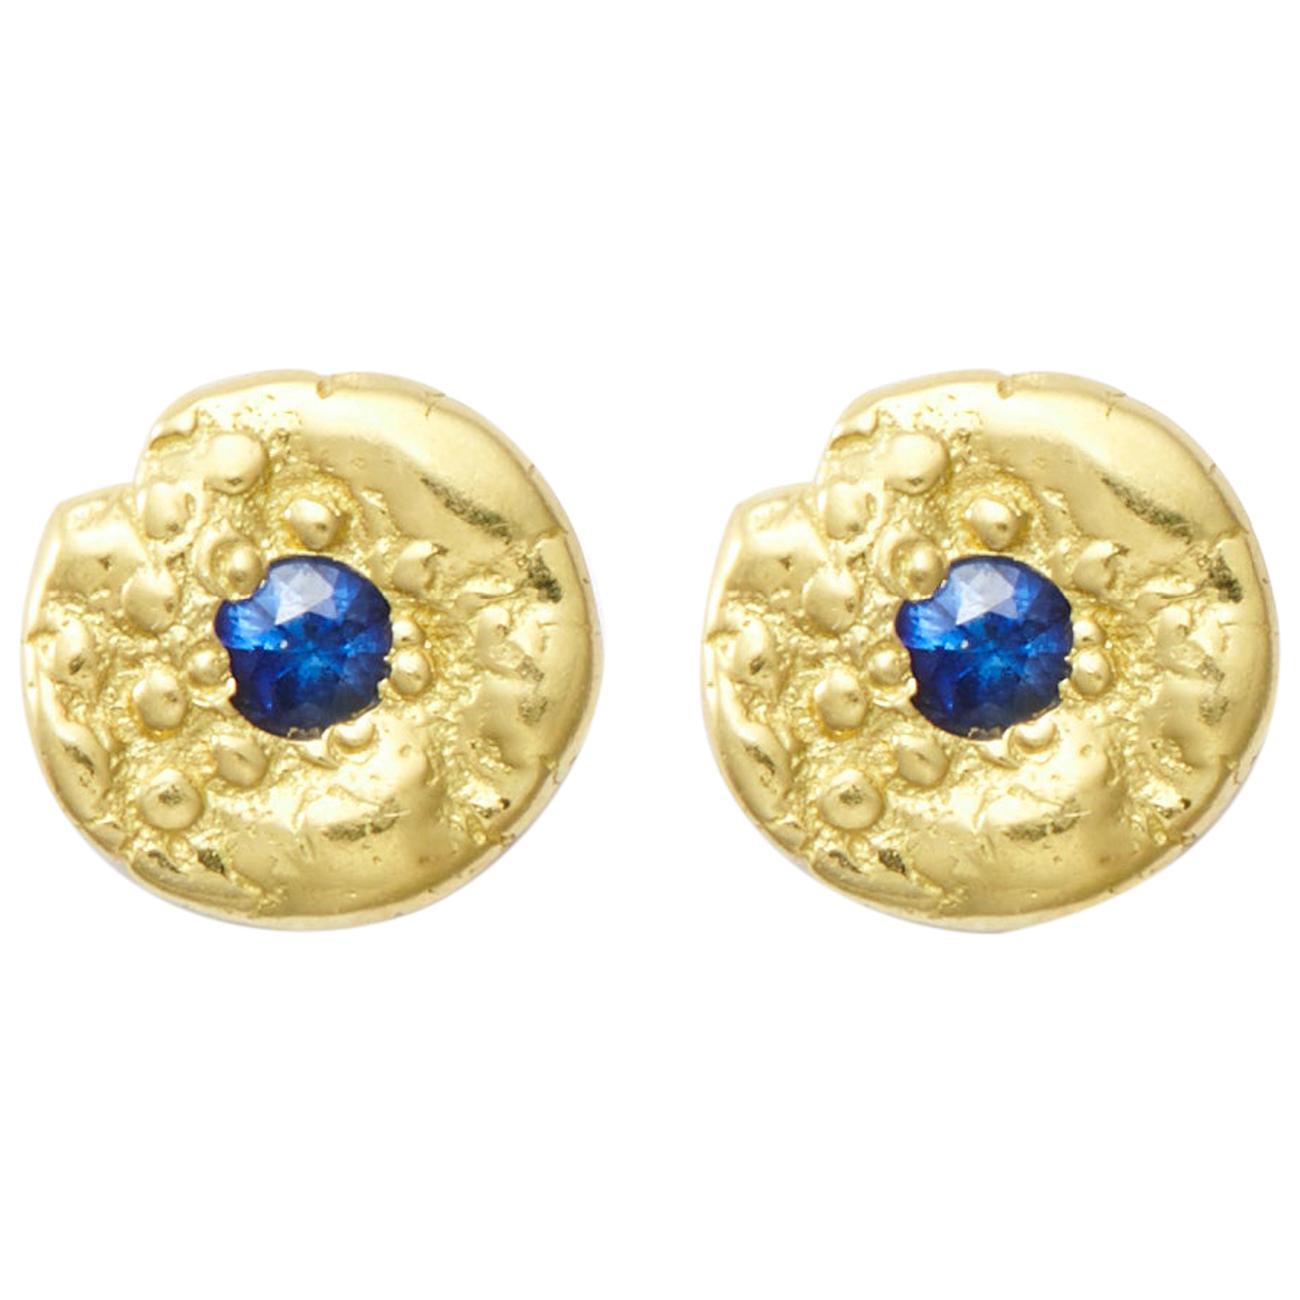 Susan Lister Locke "Seaquin" 0.10 Carat Sapphire Stud Earrings in 18 Karat Gold For Sale